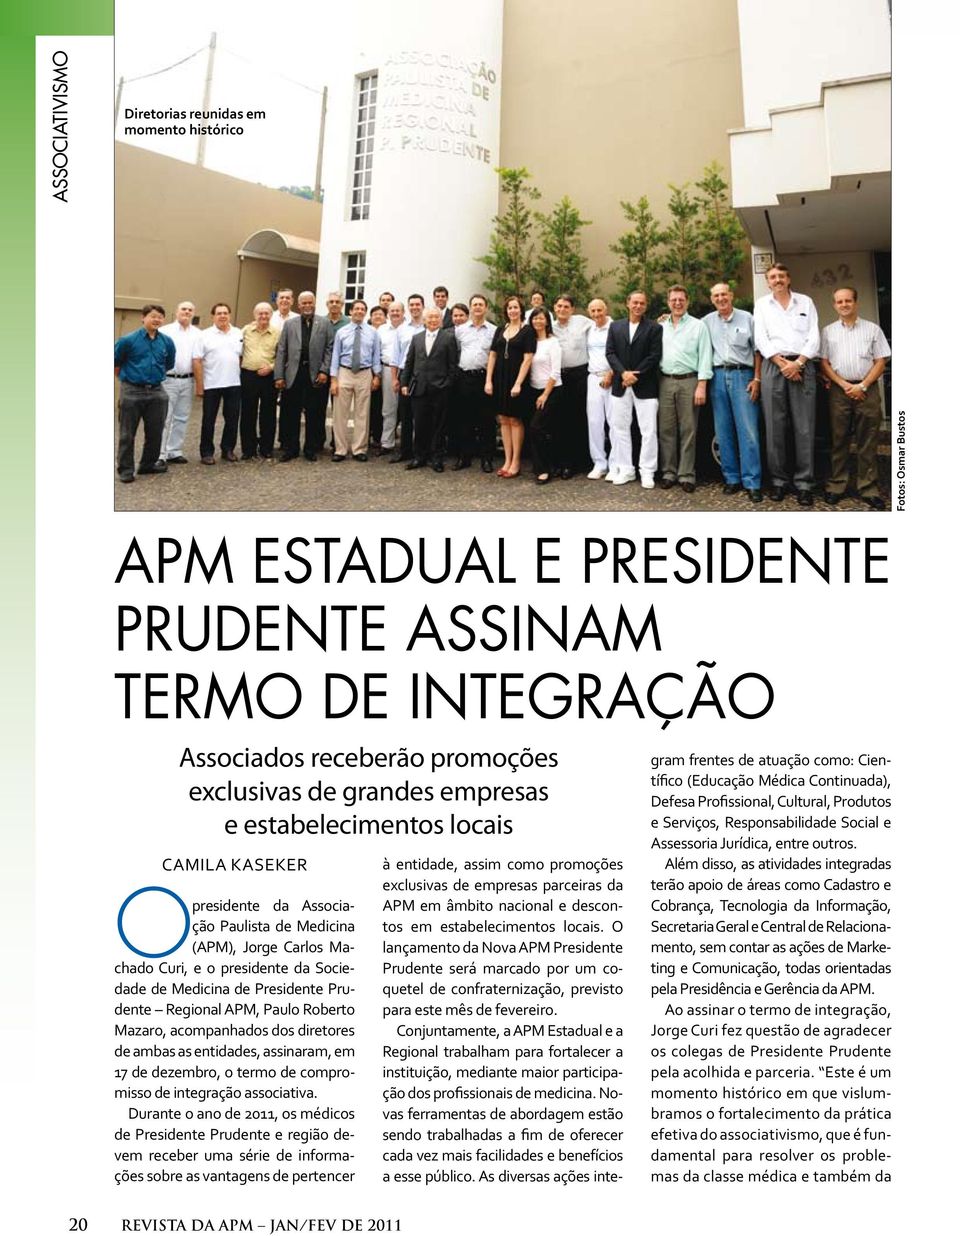 Regional APM, Paulo Roberto Mazaro, acompanhados dos diretores de ambas as entidades, assinaram, em 17 de dezembro, o termo de compromisso de integração associativa.